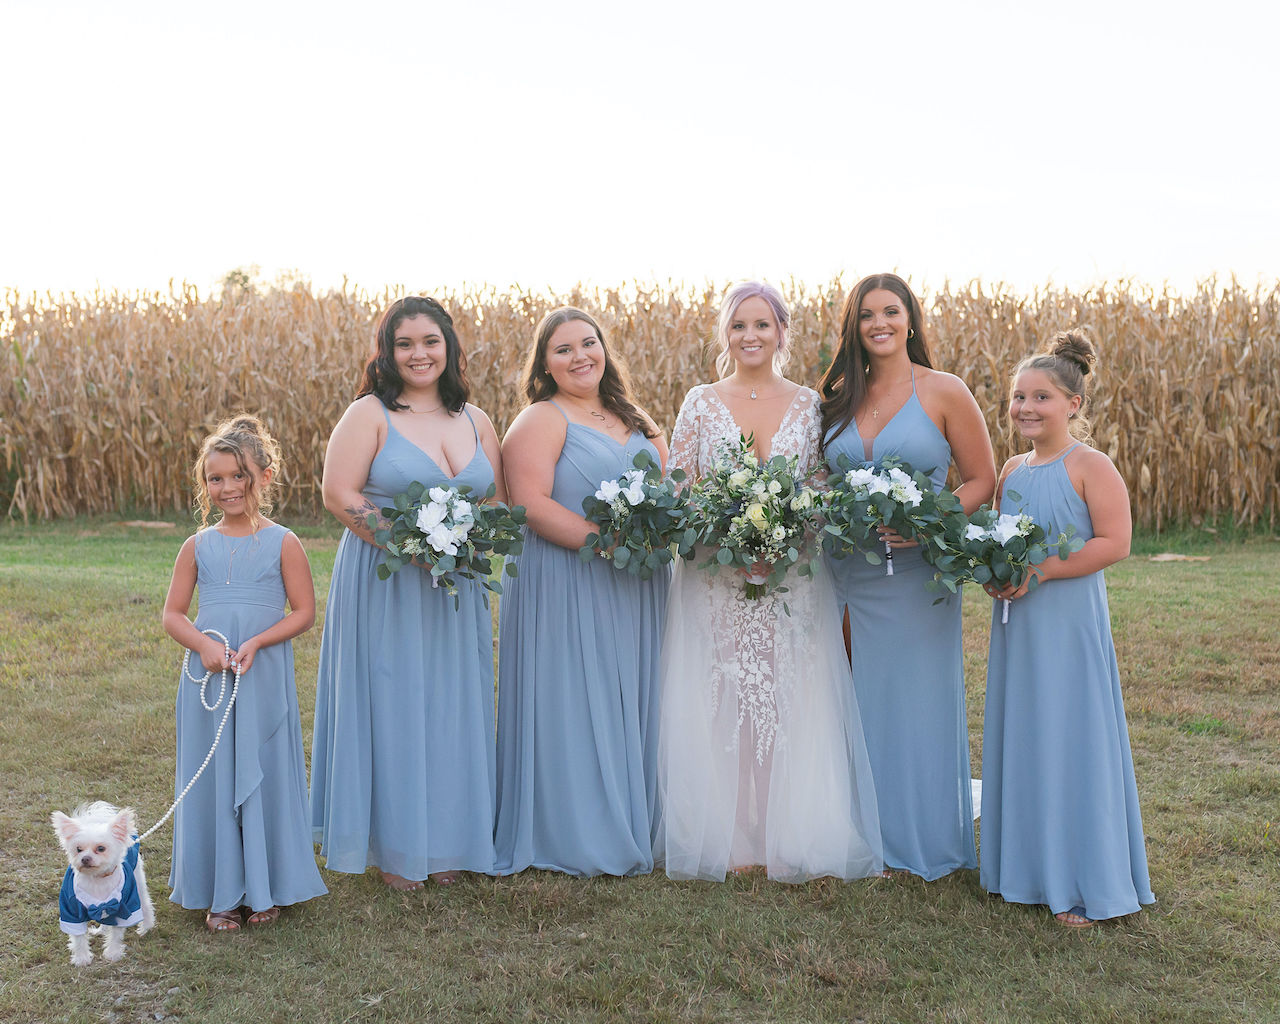 bride and bridesmaids at rustic outdoor wedding in Delaware
